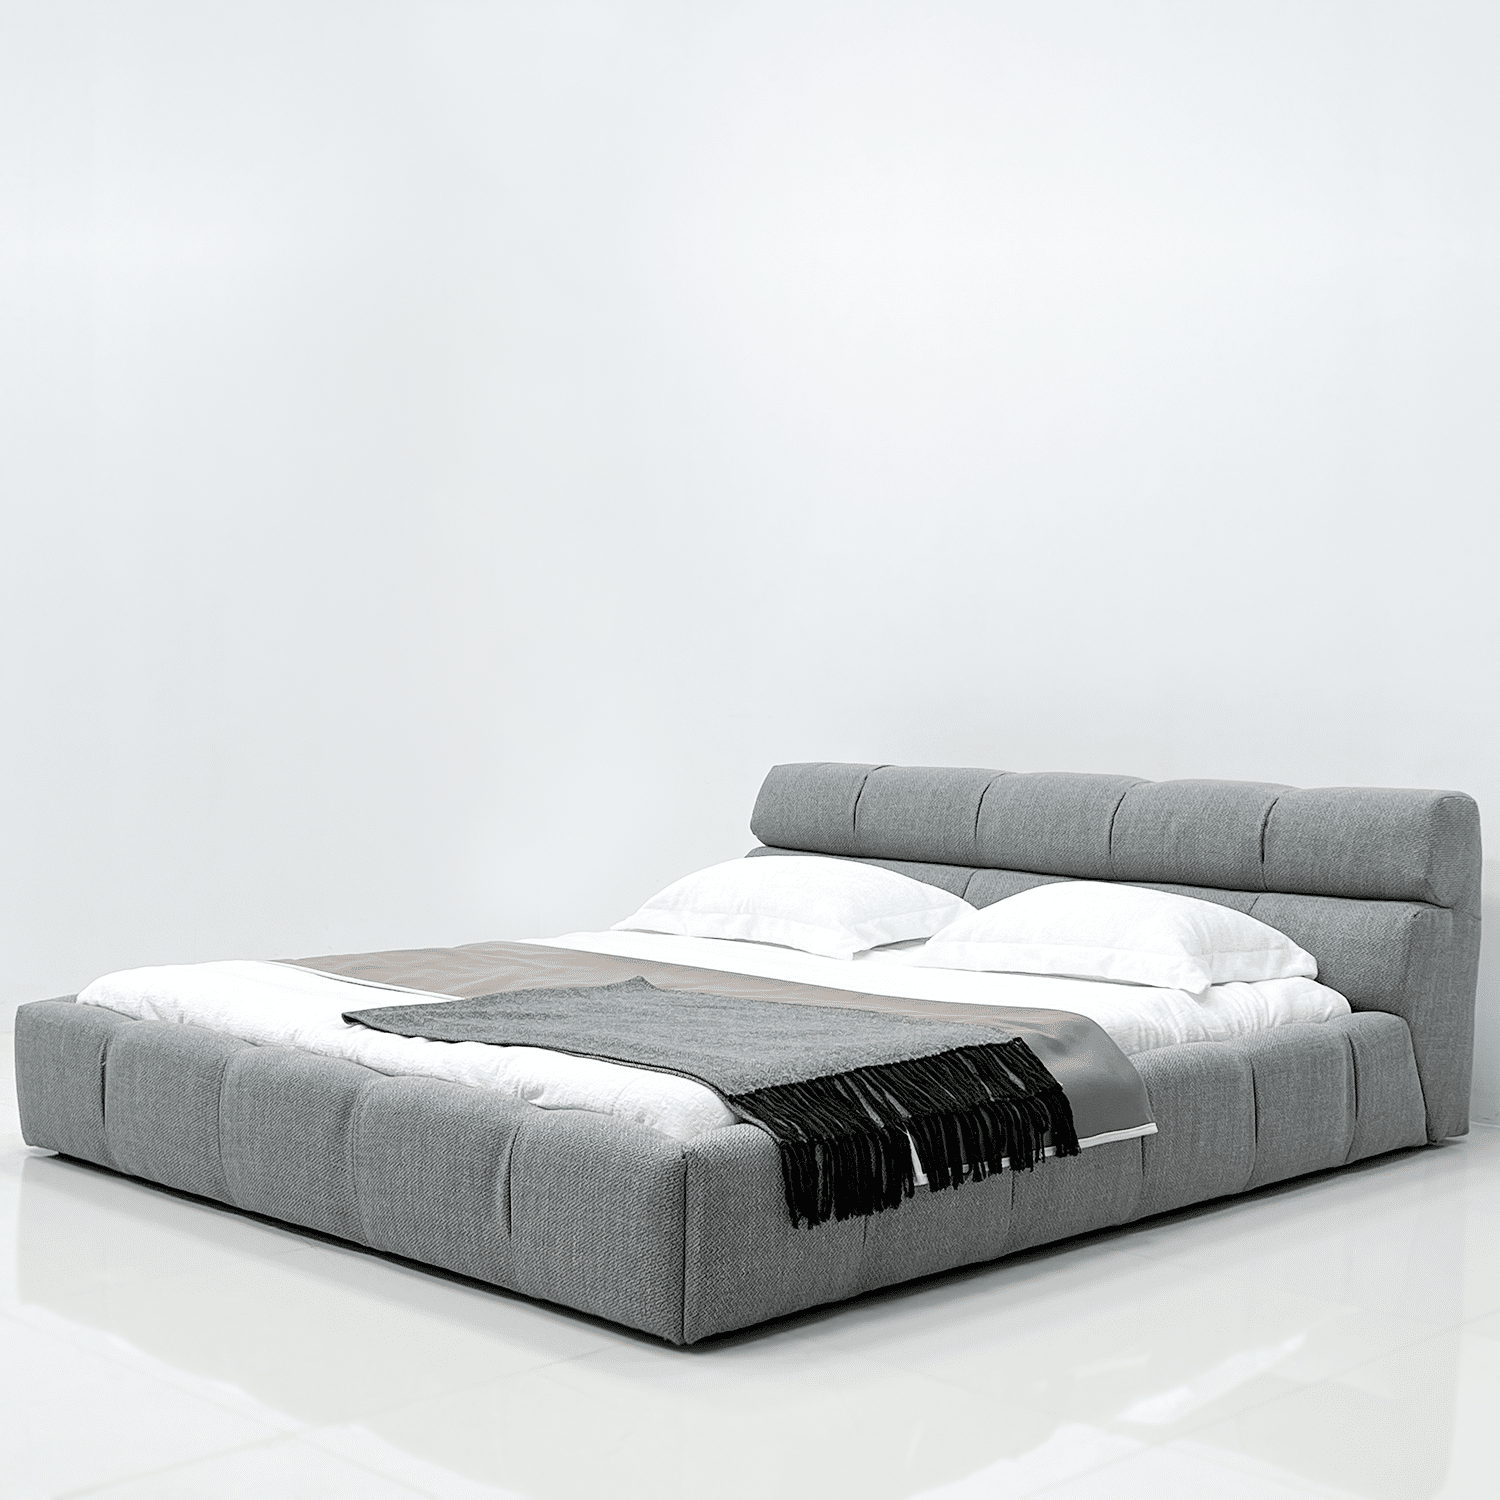 מיטה זוגית מעוצבת דגם CUBES מרופדת בבד איכותי רחיץ ודוחה כתמים, קיימת במידות 160/200 ו-180/200